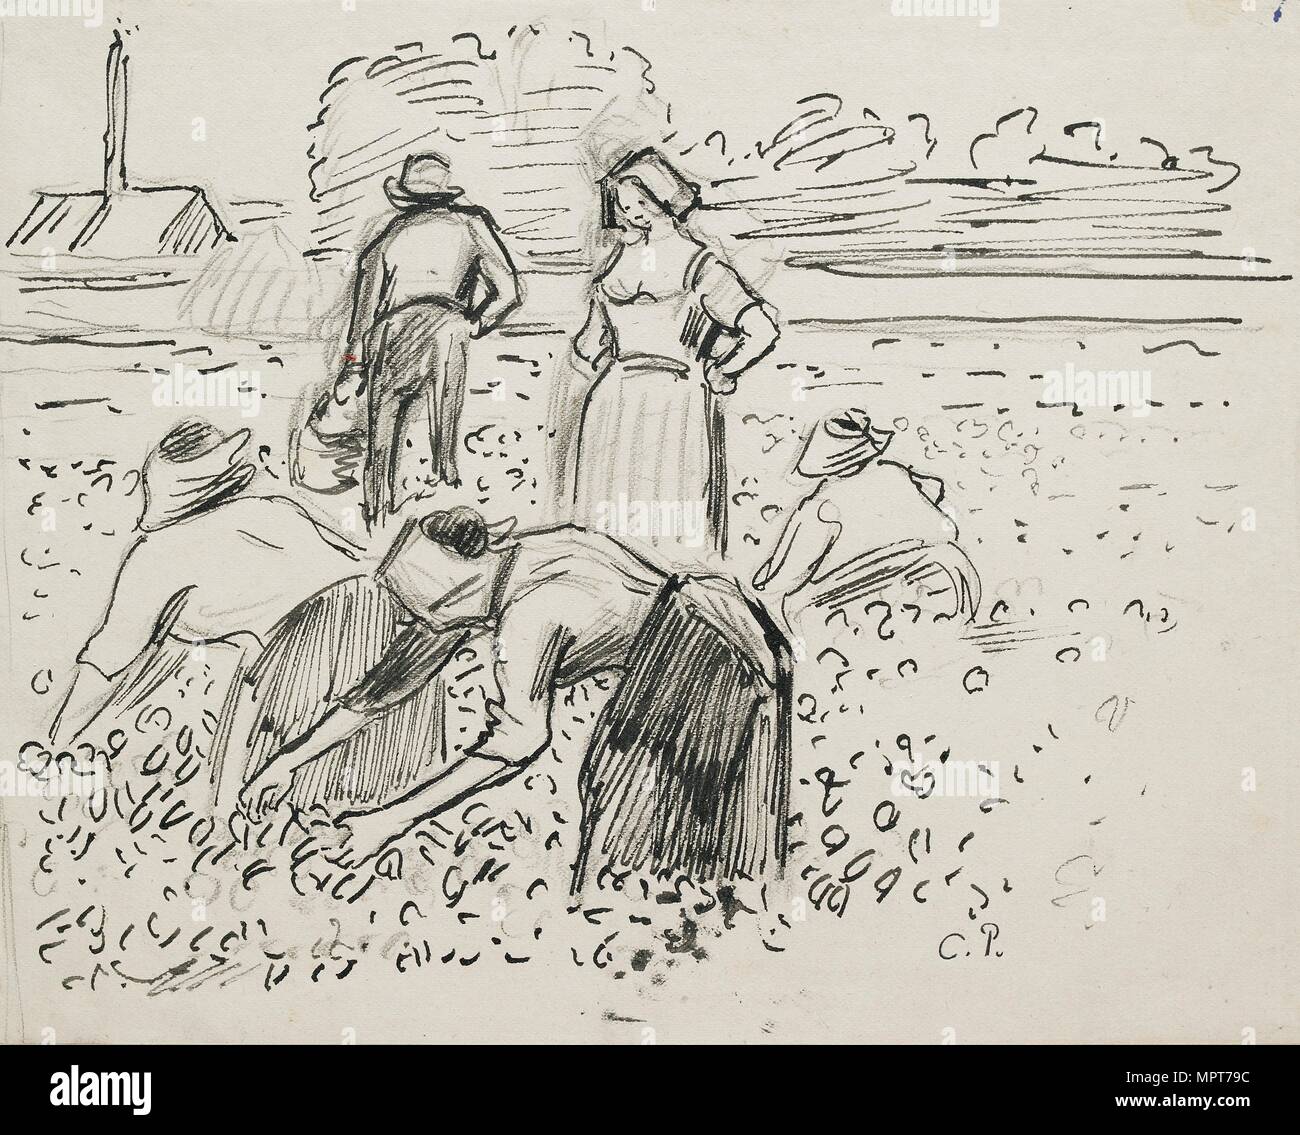 Étude de cinq figures paysannes travaillant dans un champ, 1887. Artiste : Camille Pissarro. Banque D'Images